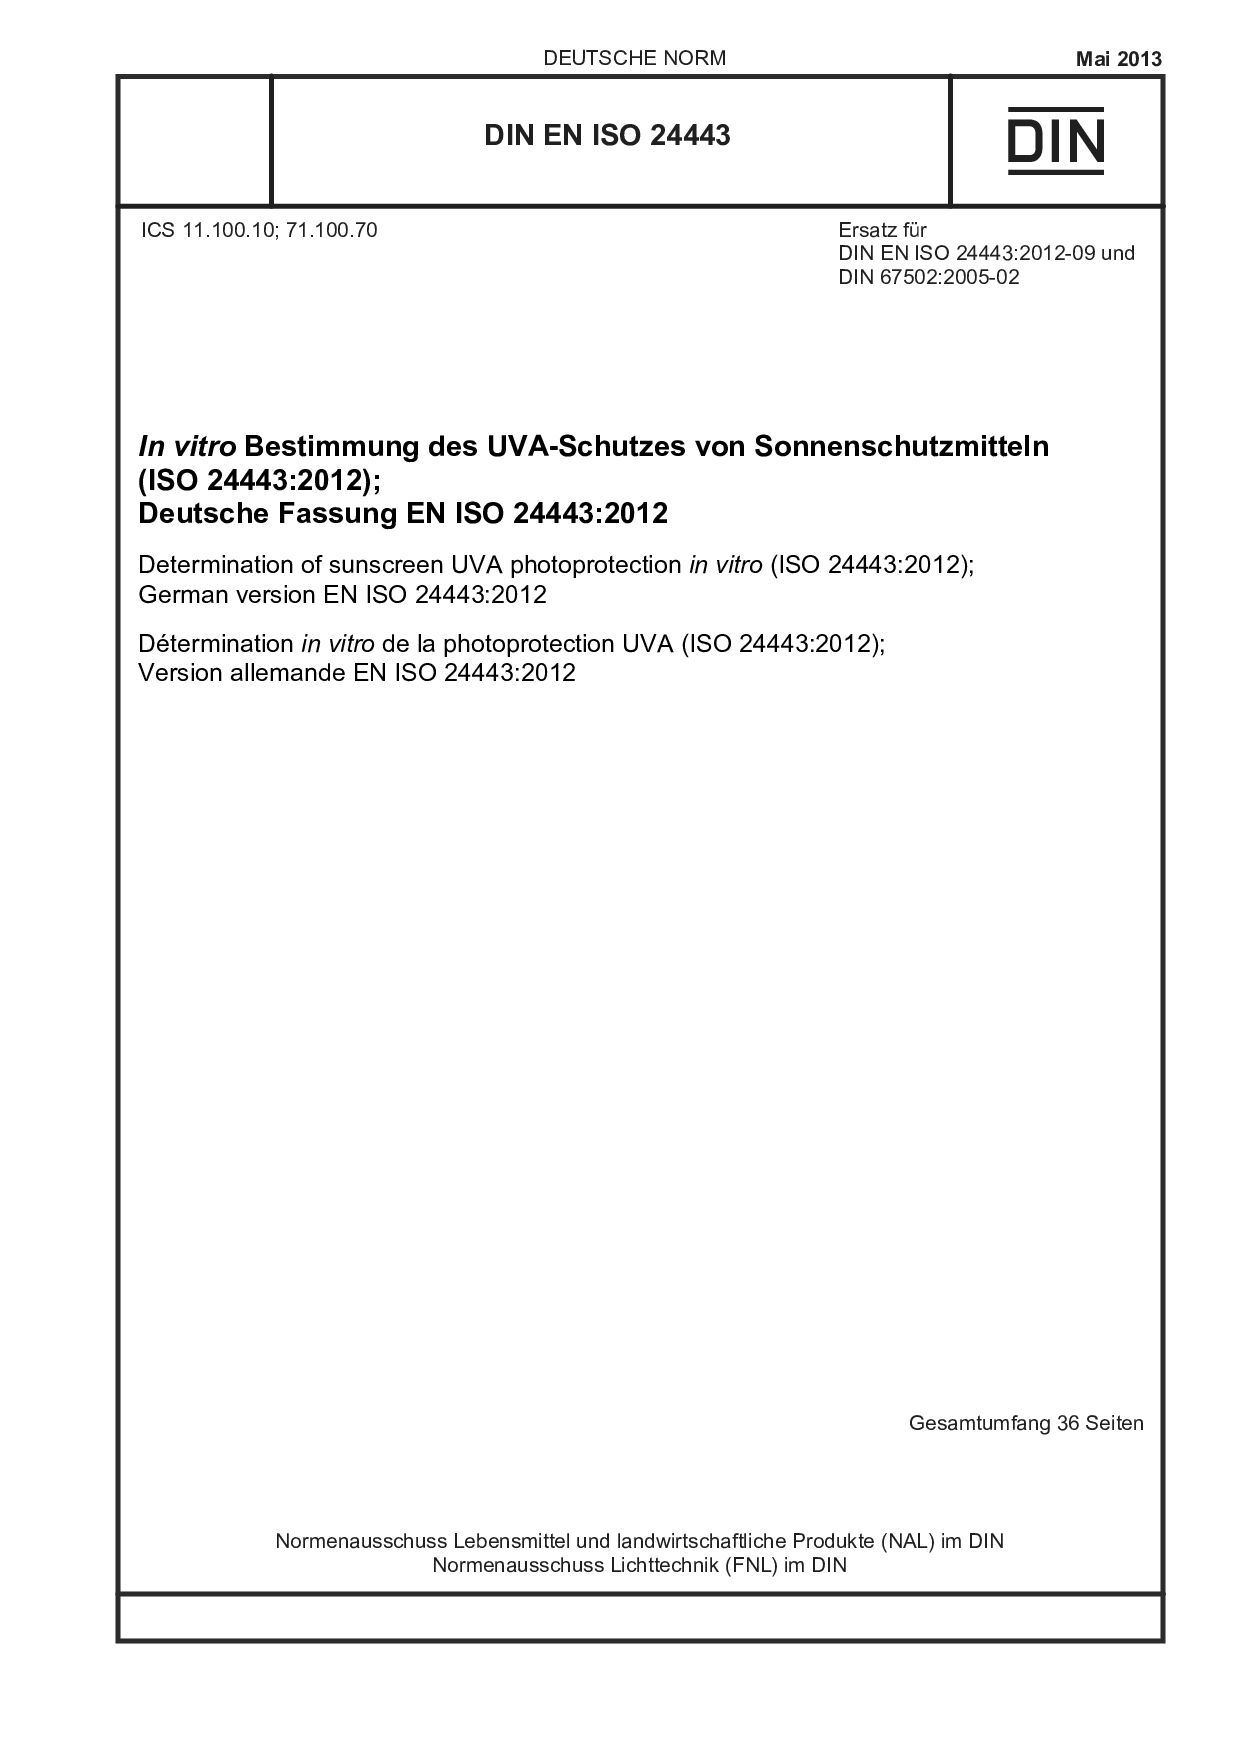 DIN EN ISO 24443:2013